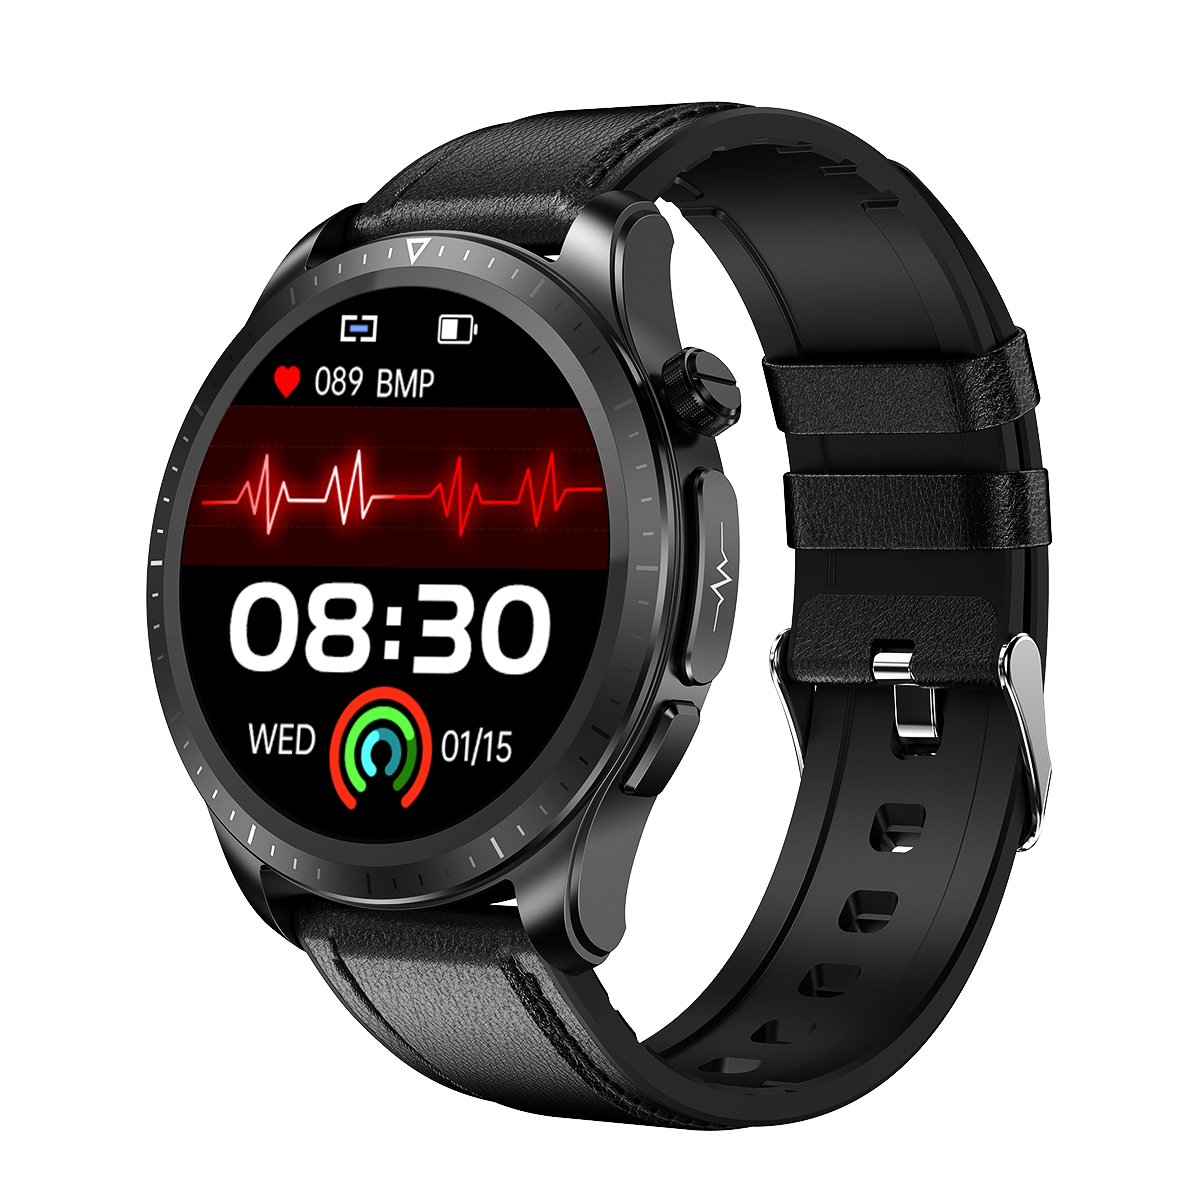 Smartwatch ProHaks pentru Monitorizarea Functiilor Vitale (Glicemie, Tensiune Arteriala, ECG 3 Derivatii) - Vreau Chestii